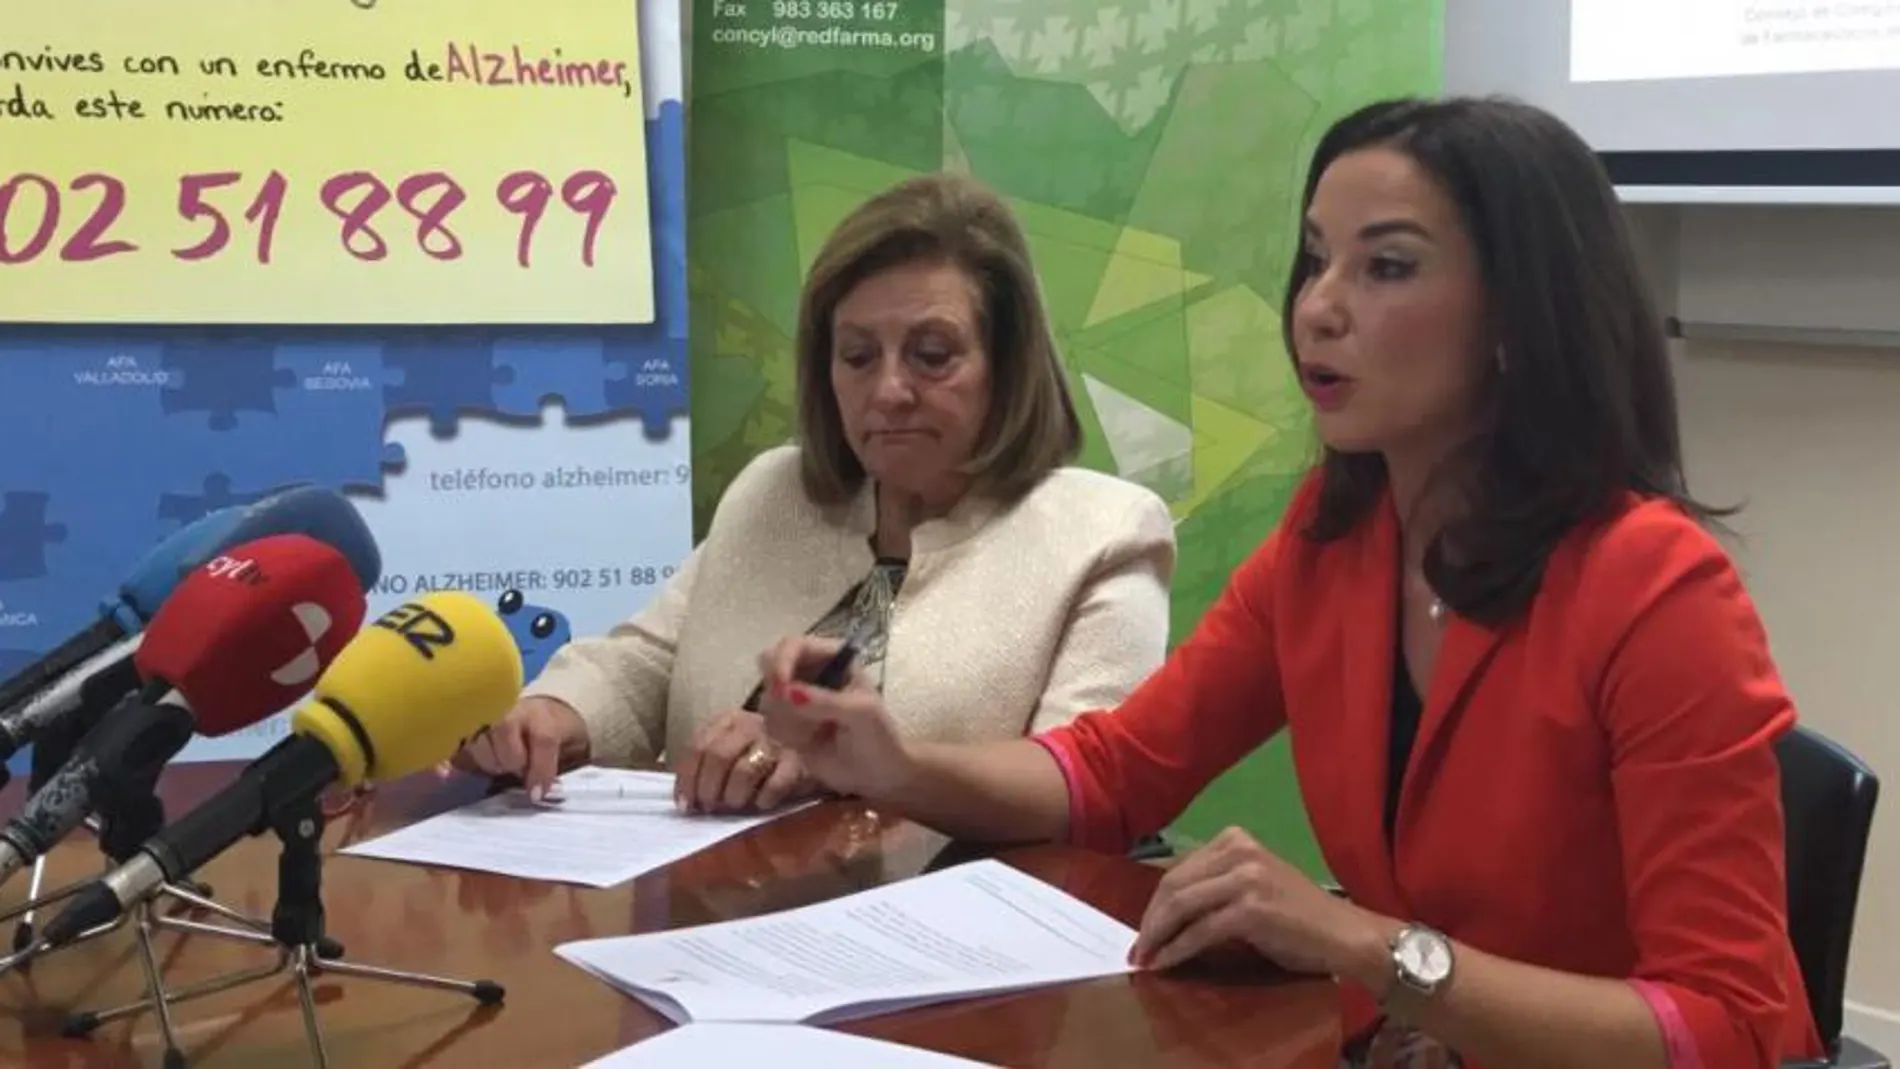 La presidenta de los farmacéuticos, Raquel Martínez, y la de Afacayle, Milagros Carvajal, explican el acuerdo de colaboración